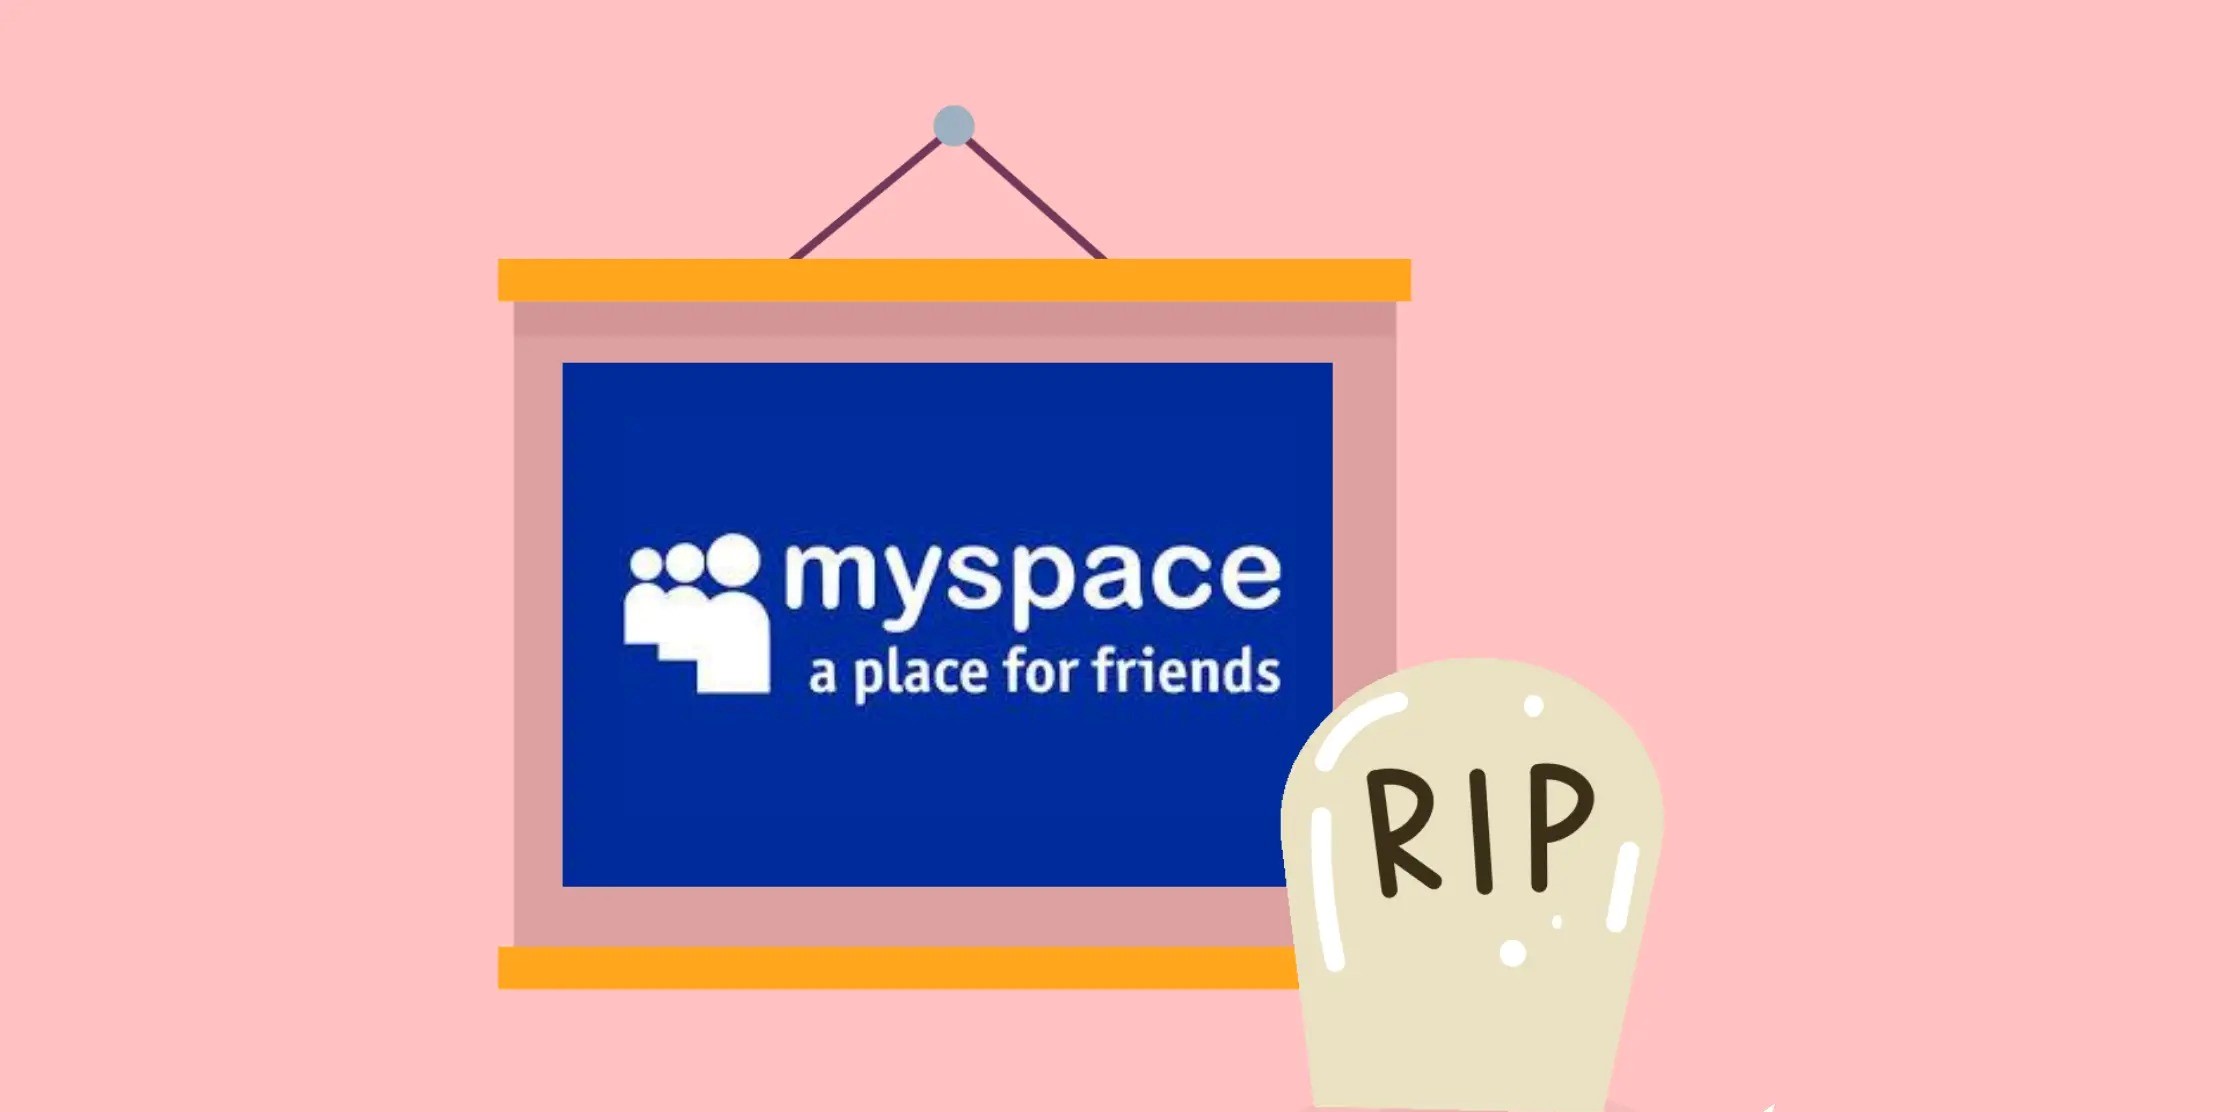 Is Myspace Dead Or Does It Still Exist?